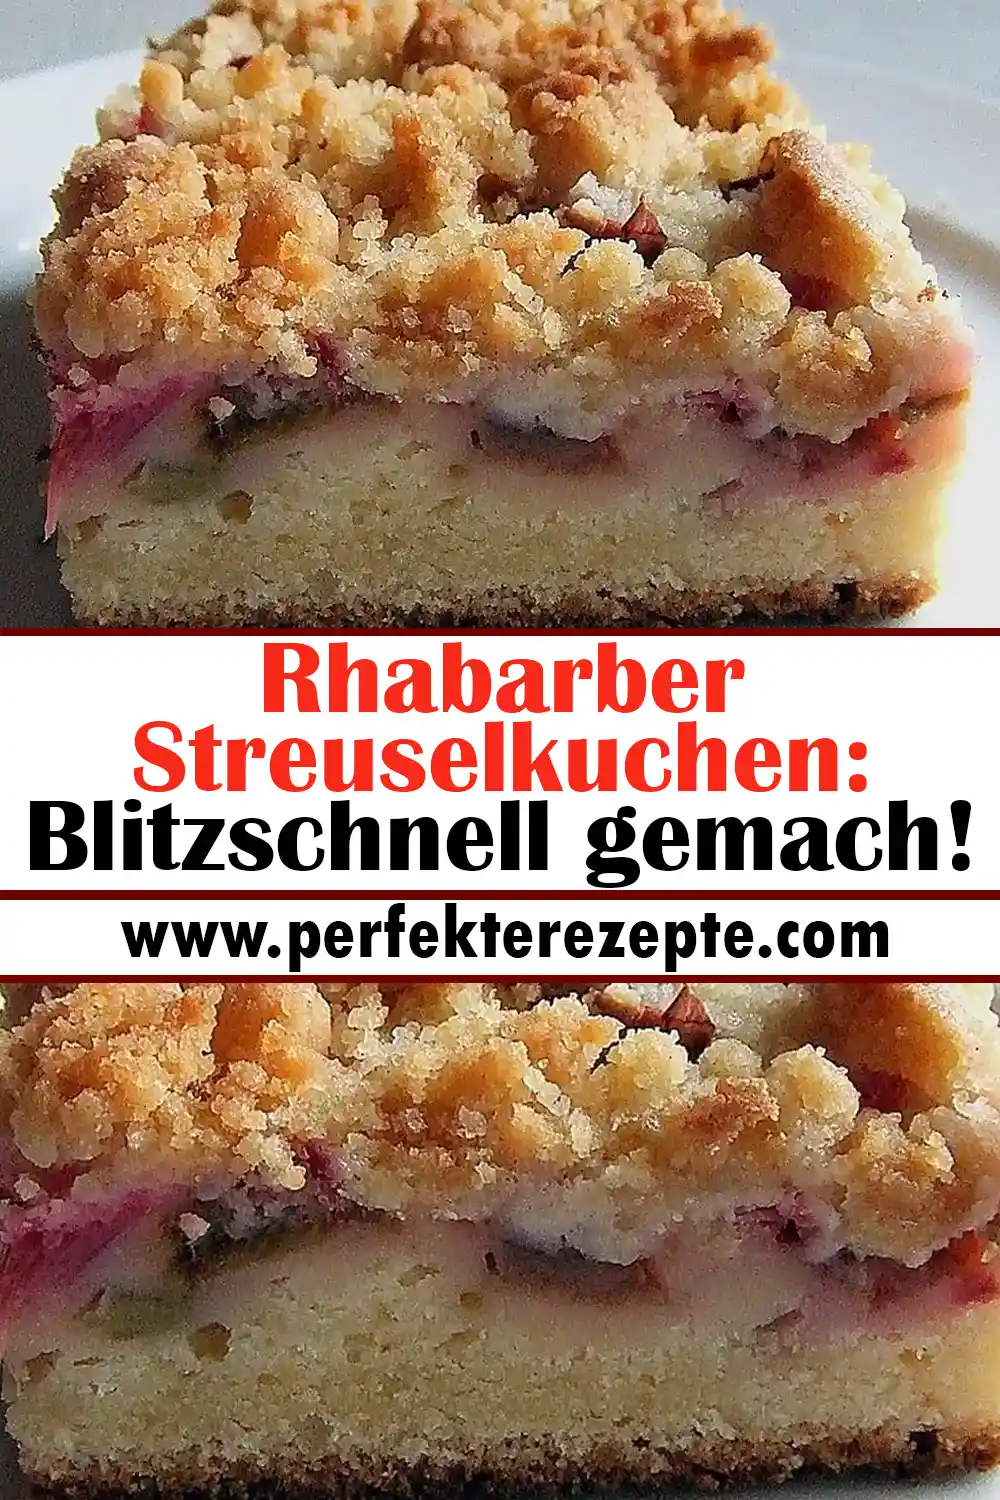 Rhabarber Streuselkuchen Rezept: Blitzschnell gemach!